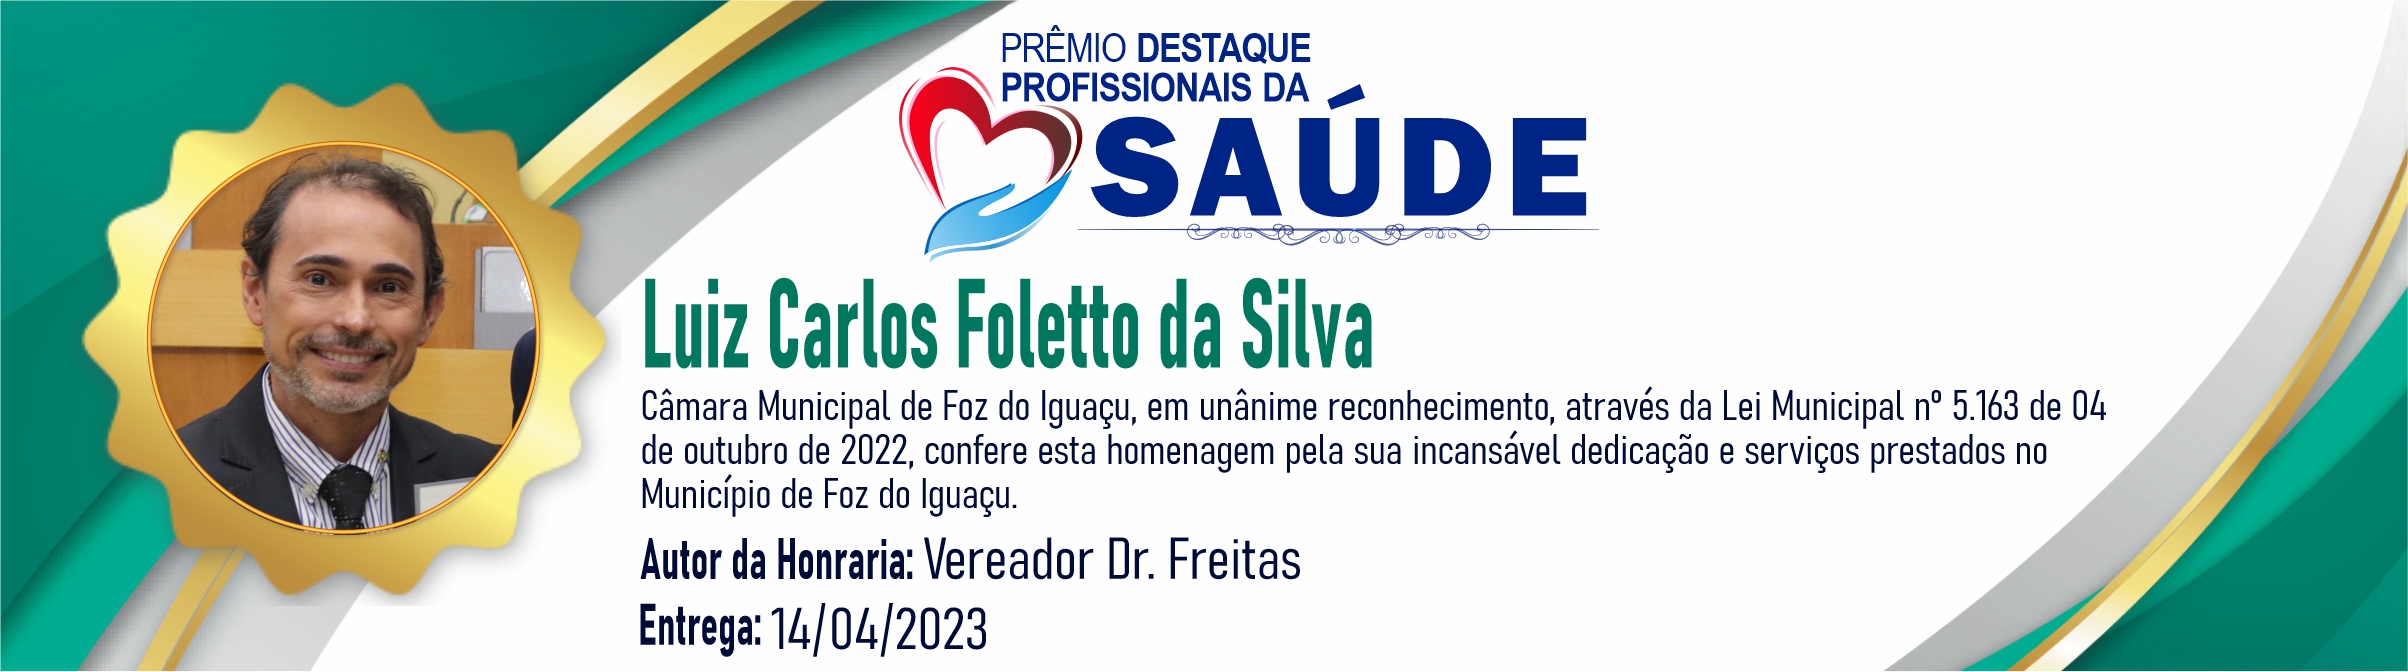 Luiz Carlos Foletto da Silva